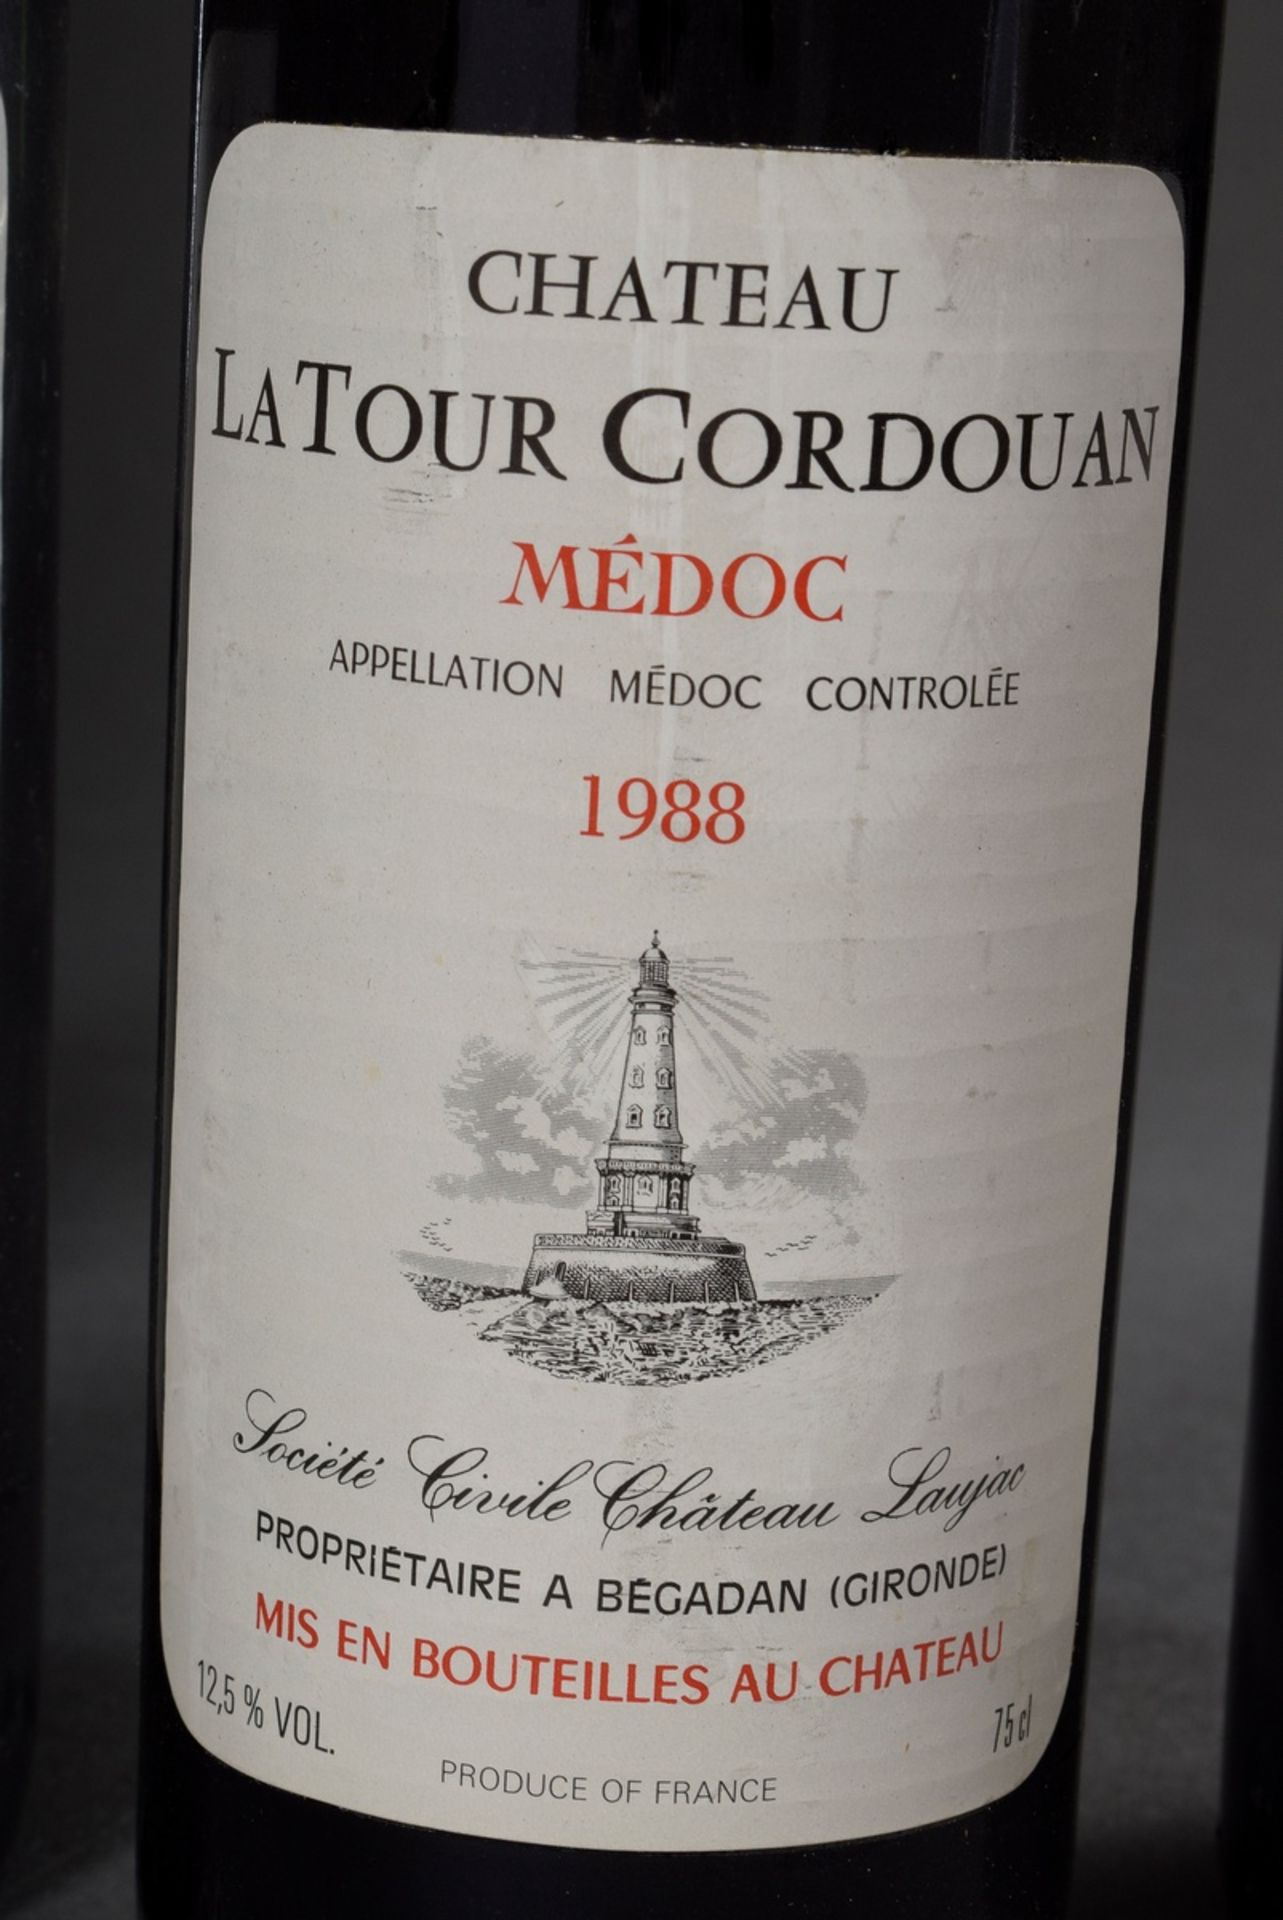 6 bottles 1988 Chateau la Tour Cordouan, Medoc, Bordeaux, Red wine, 0,75l, contains sulfites - Image 2 of 3